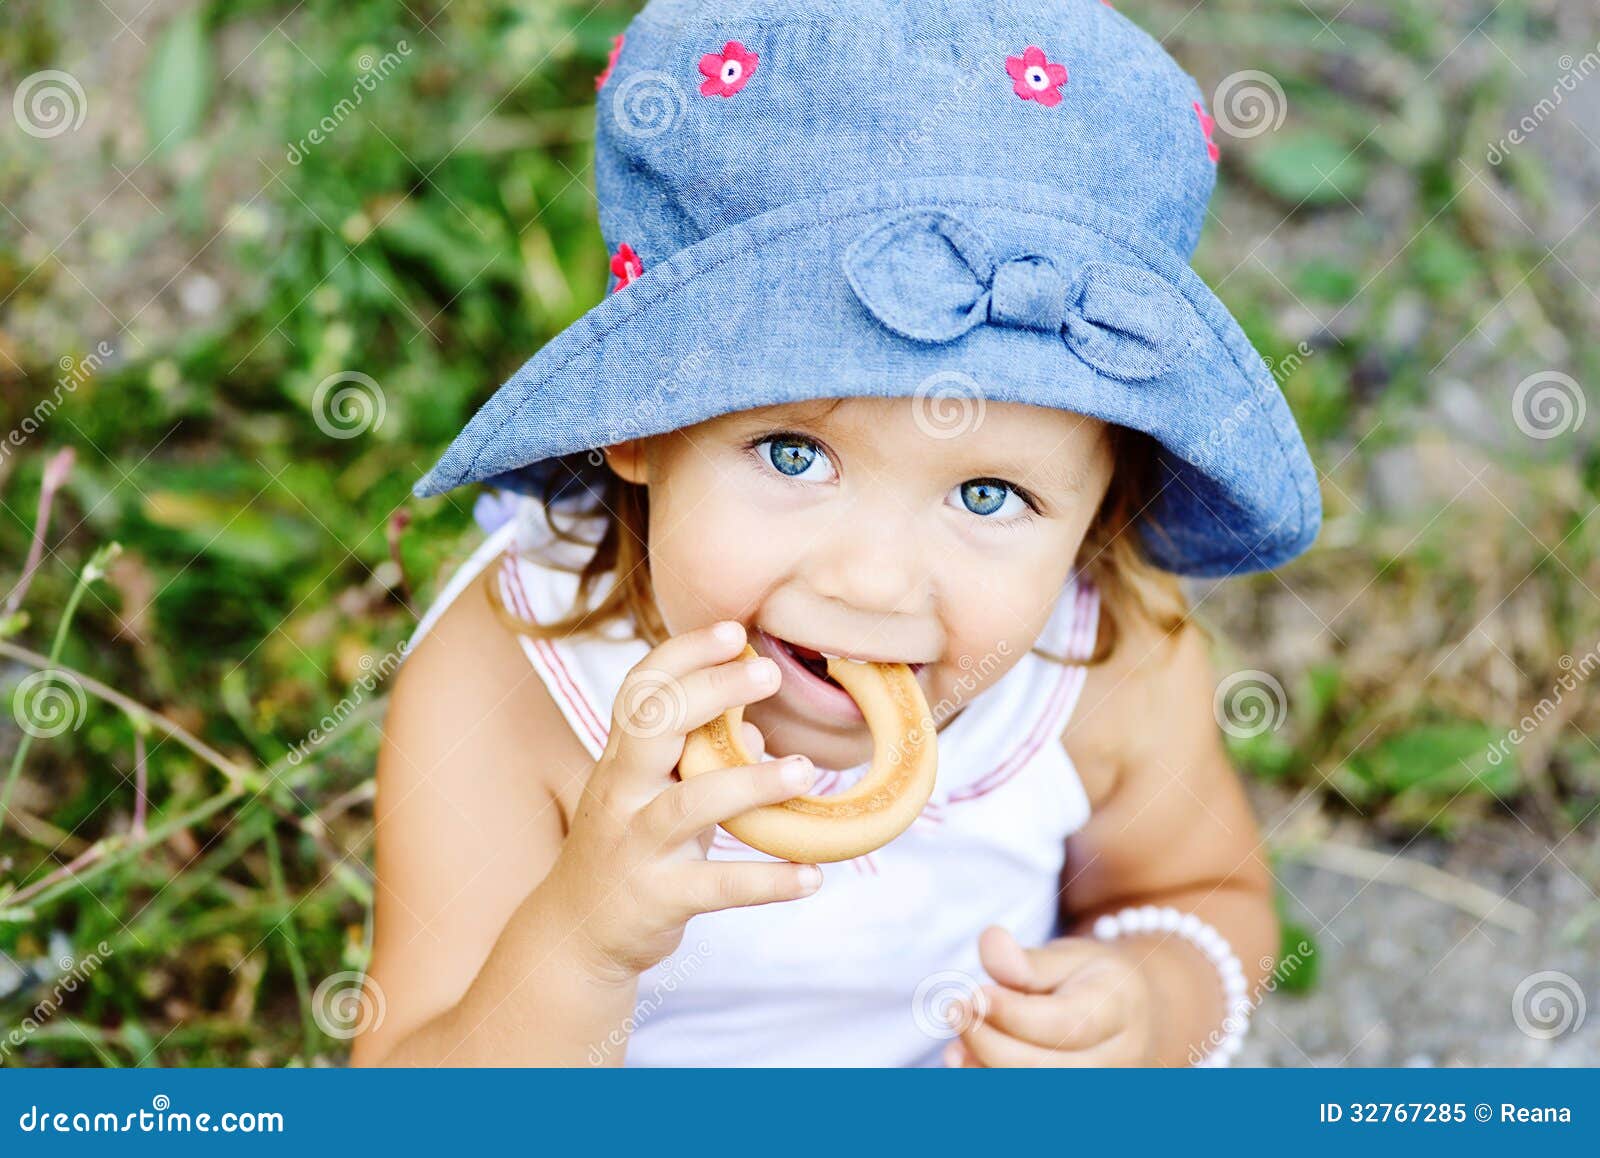 toddler girl eating cracknel